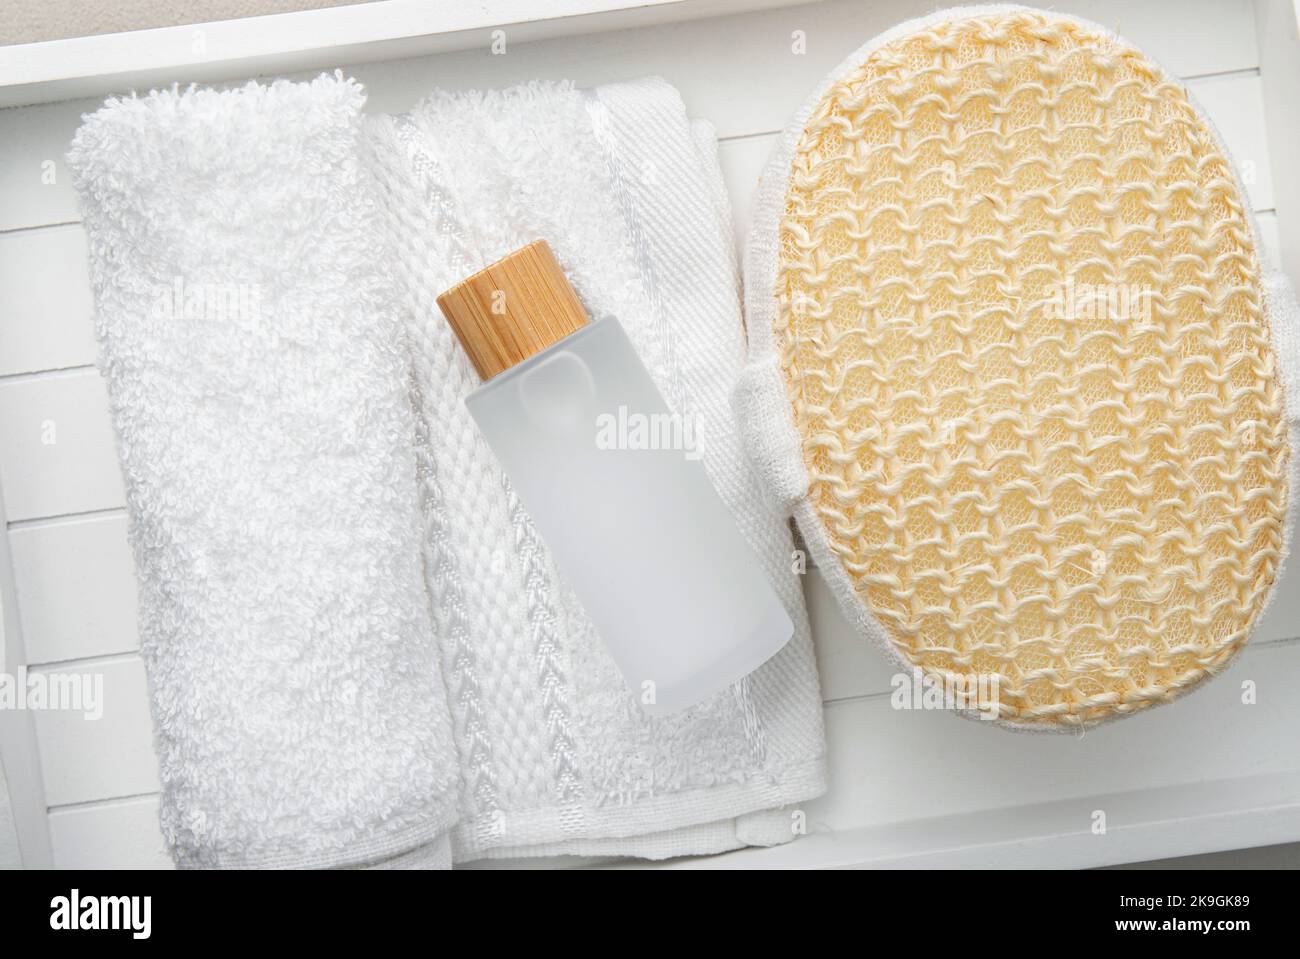 Konzept des Intimwaschgels für die tägliche Hygiene des empfindlichen Intimbereichs. Matte Seifenflasche mit Gel auf gerolltem weißen Handtuch und Badeschwamm zu Hause. Stockfoto